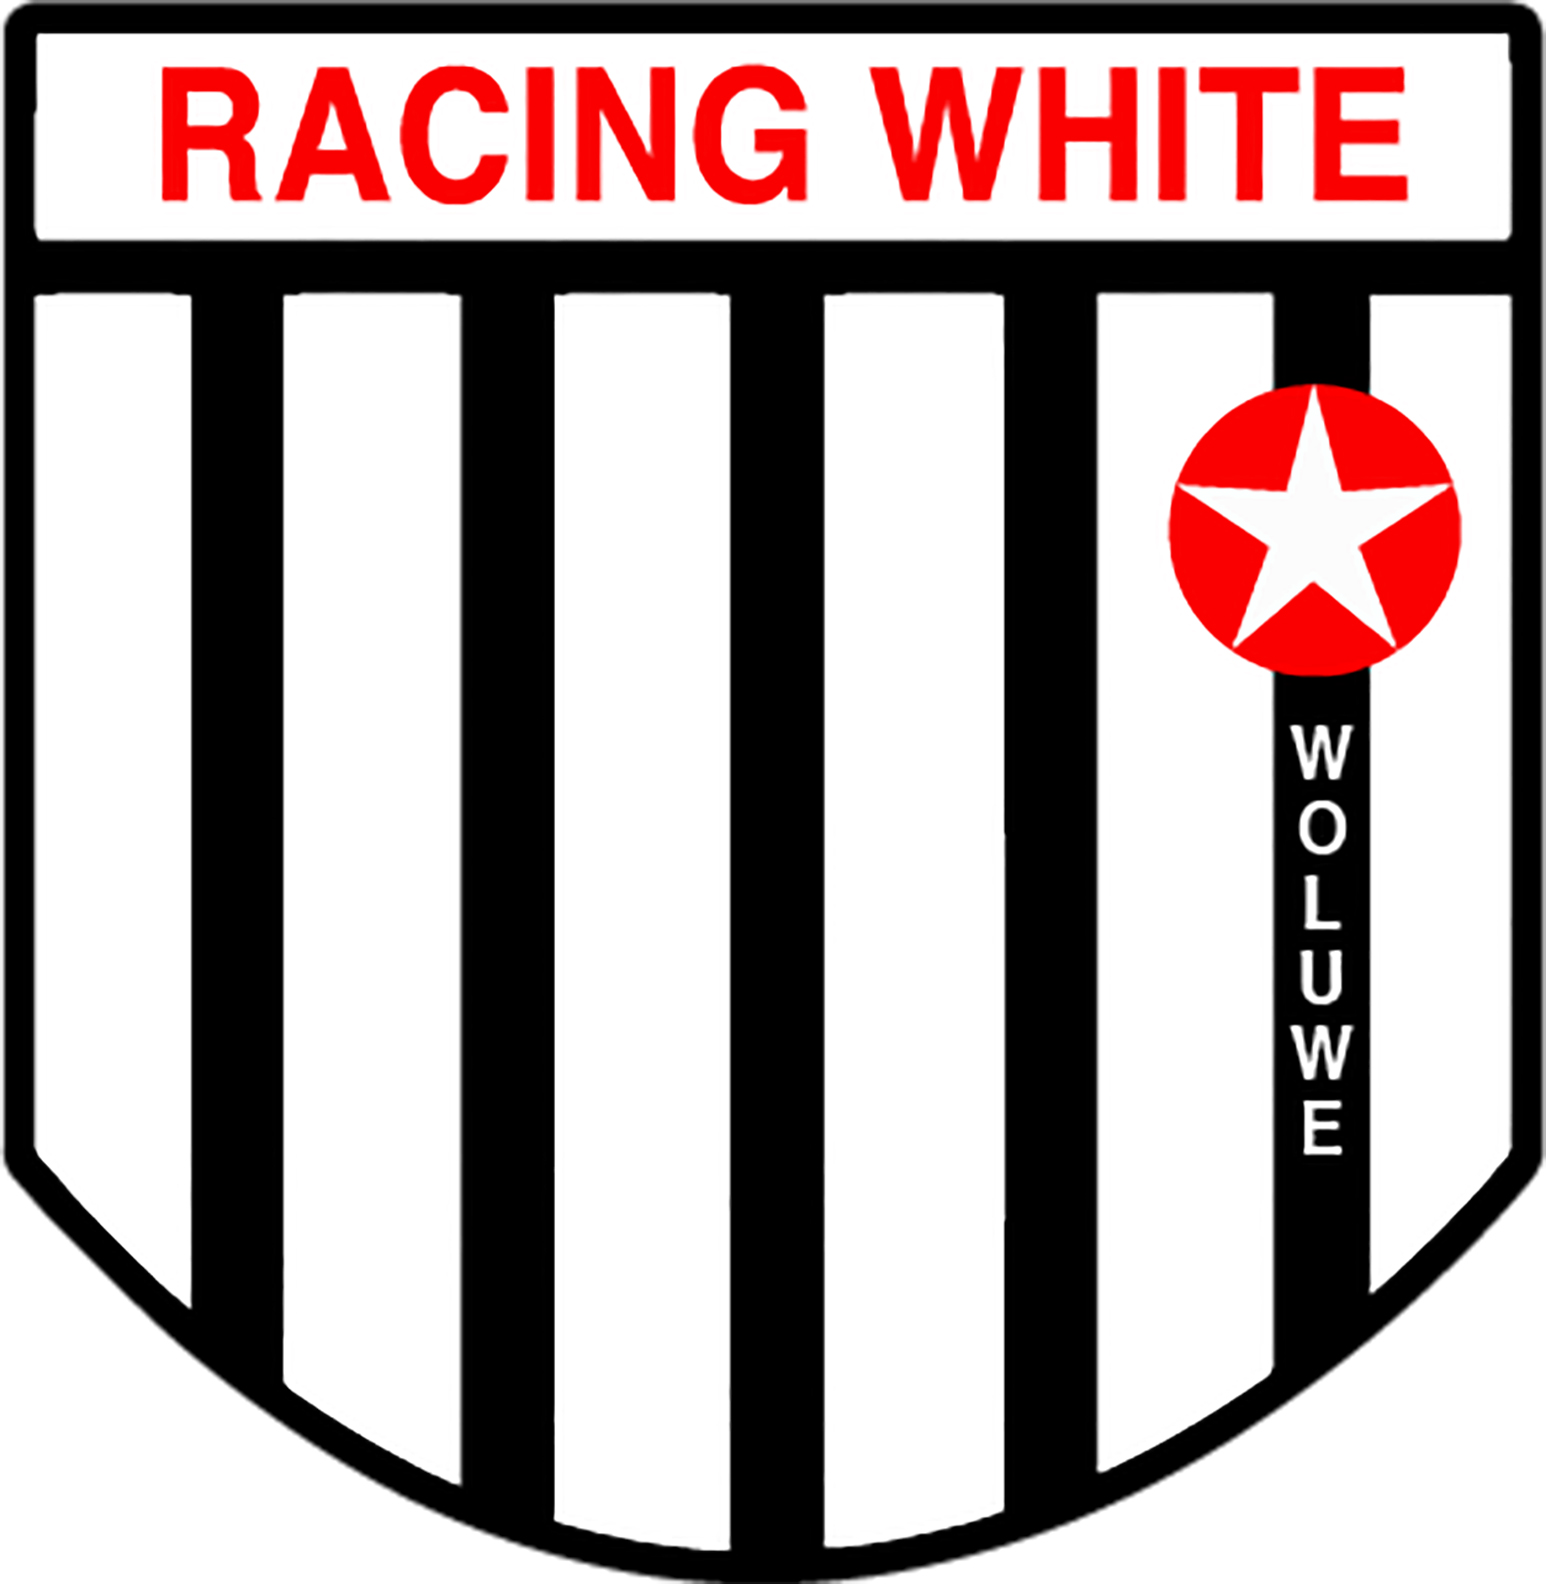 4 - Racing White Woluwe B